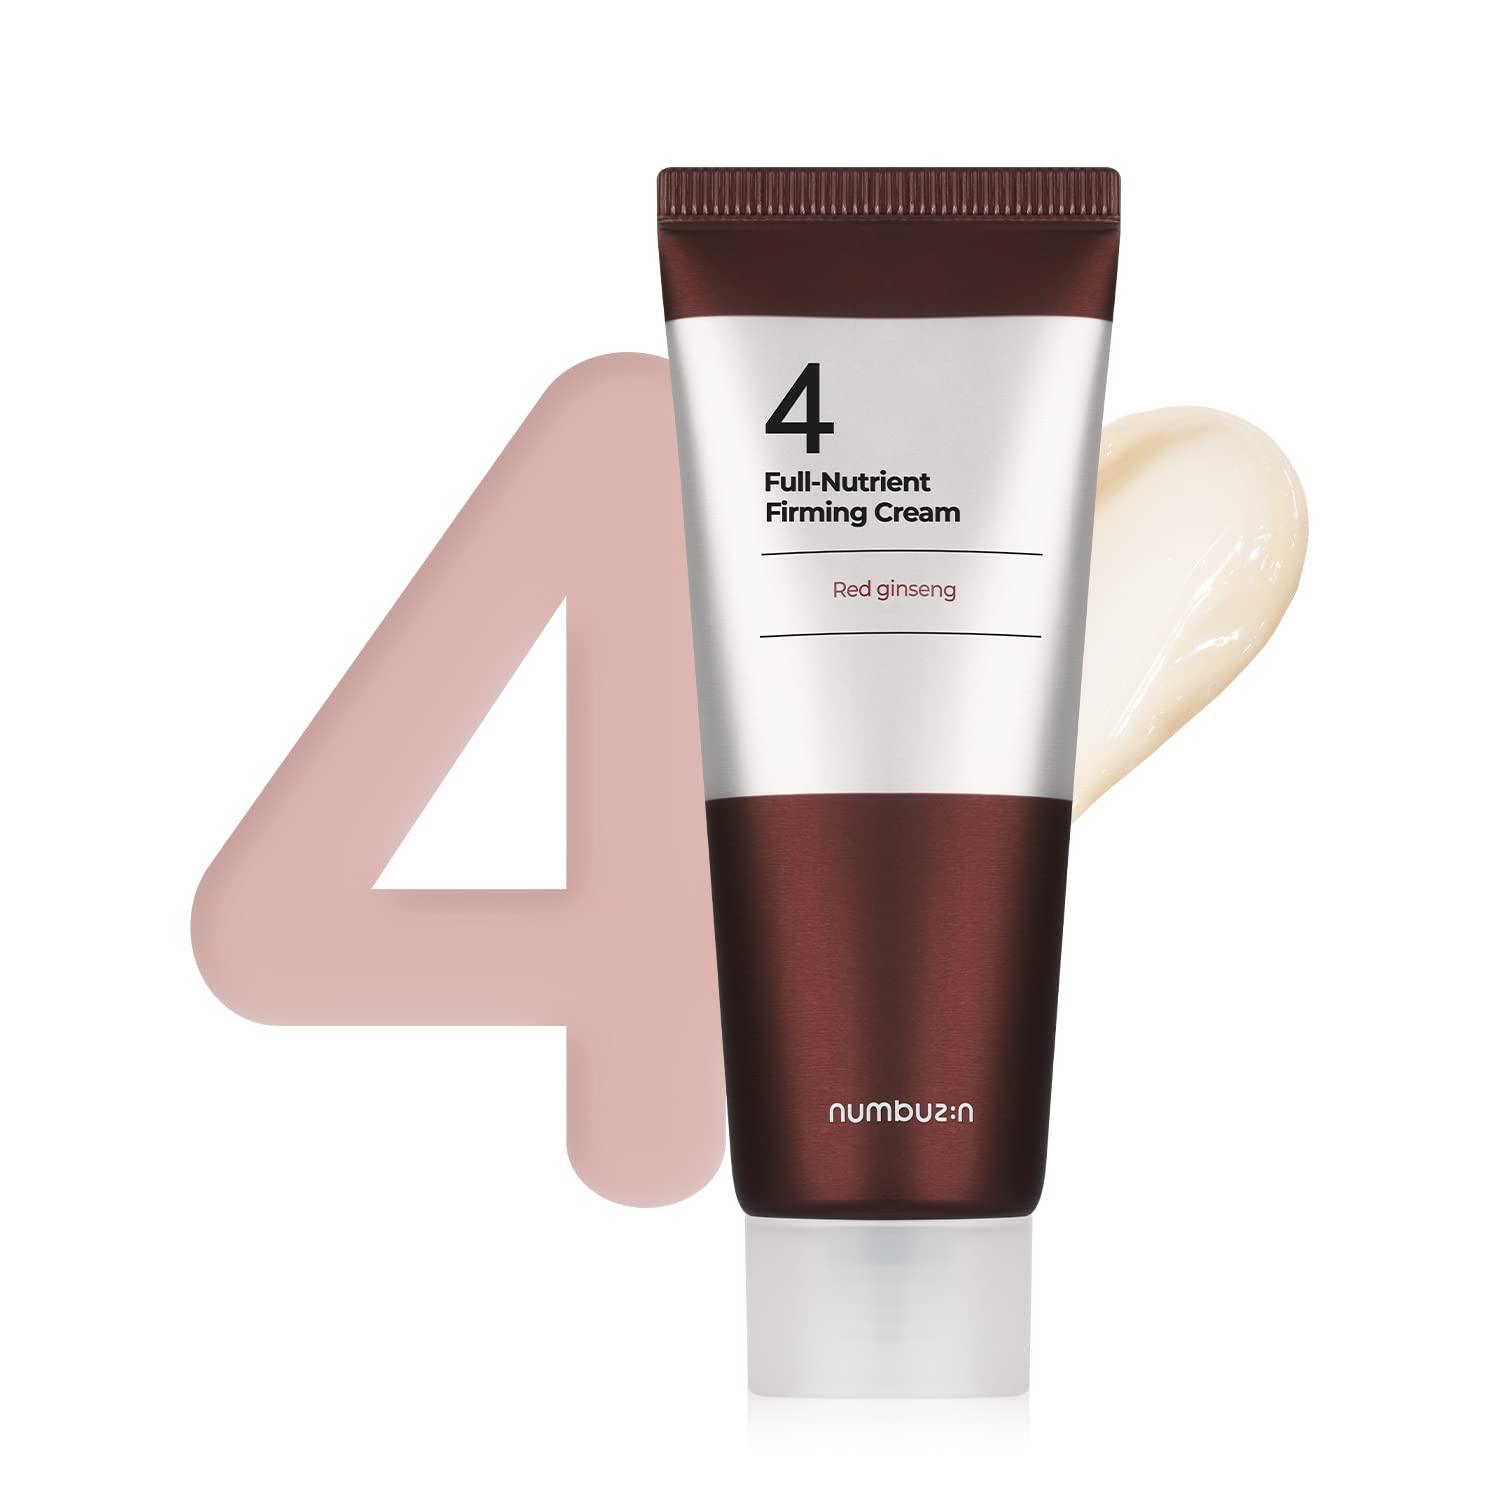 Numbuzin - No.4 Full-Nutrient Firming Cream 60ml - Arumi Korean Cosmetics